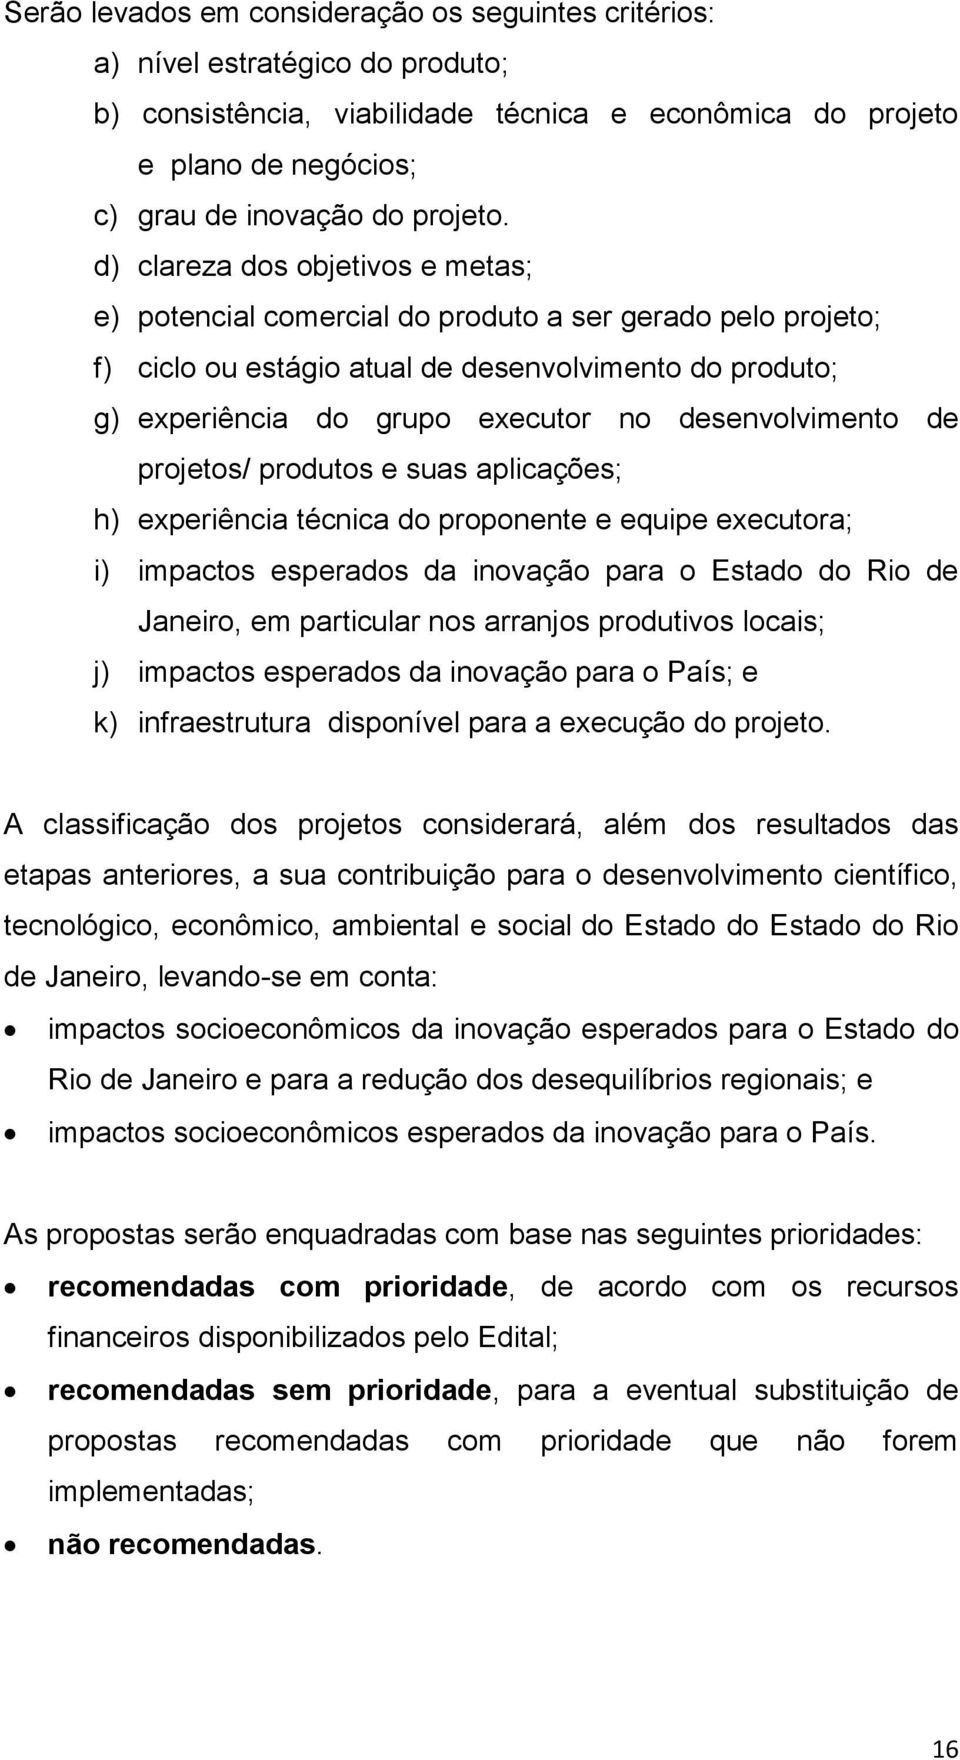 desenvolvimento de projetos/ produtos e suas aplicações; h) experiência técnica do proponente e equipe executora; i) impactos esperados da inovação para o Estado do Rio de Janeiro, em particular nos